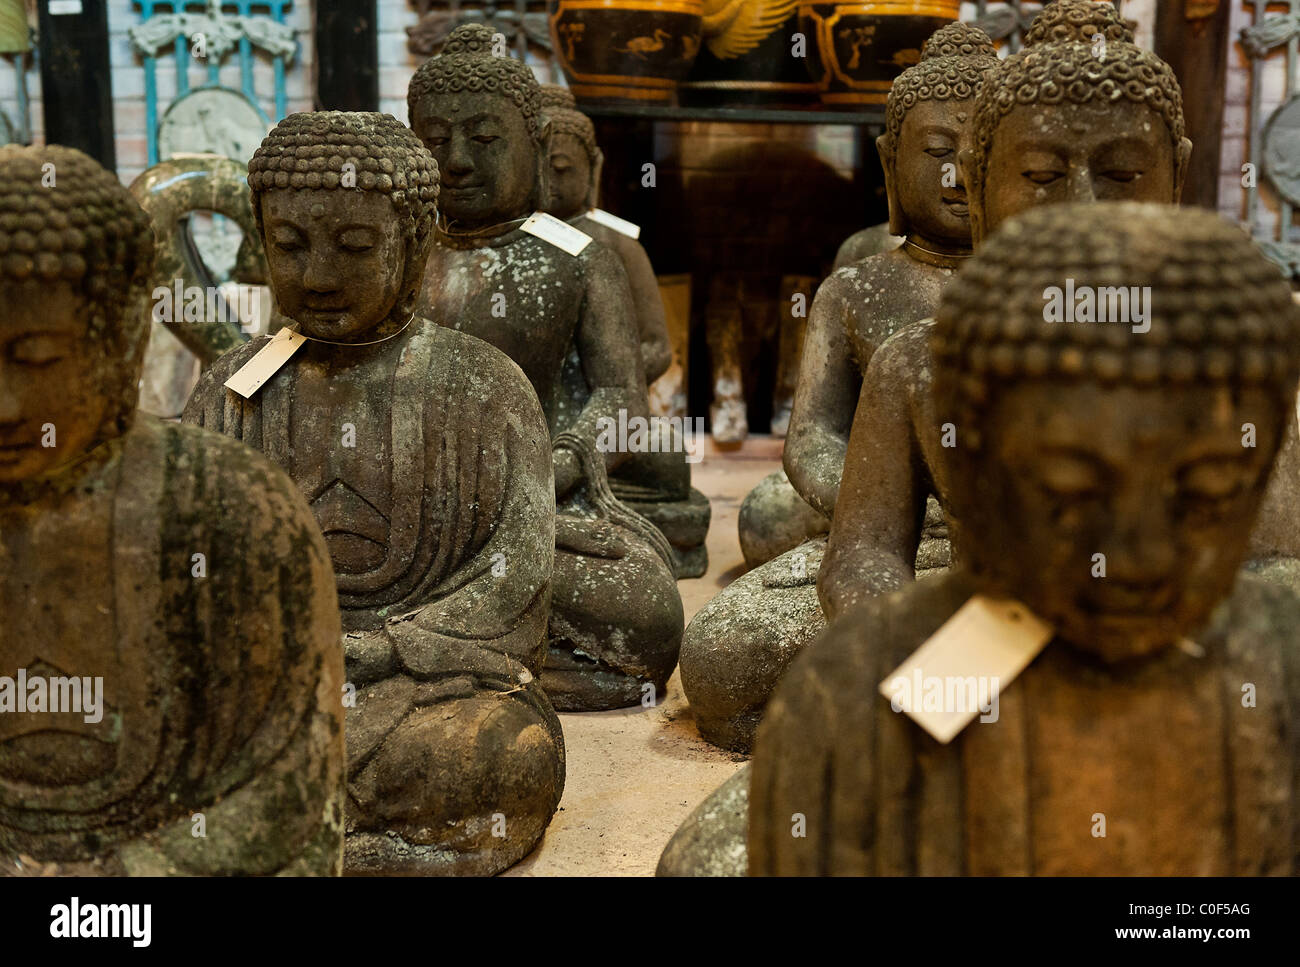 Buddha-Statuen in einem asiatischen Import Shop. Stockfoto